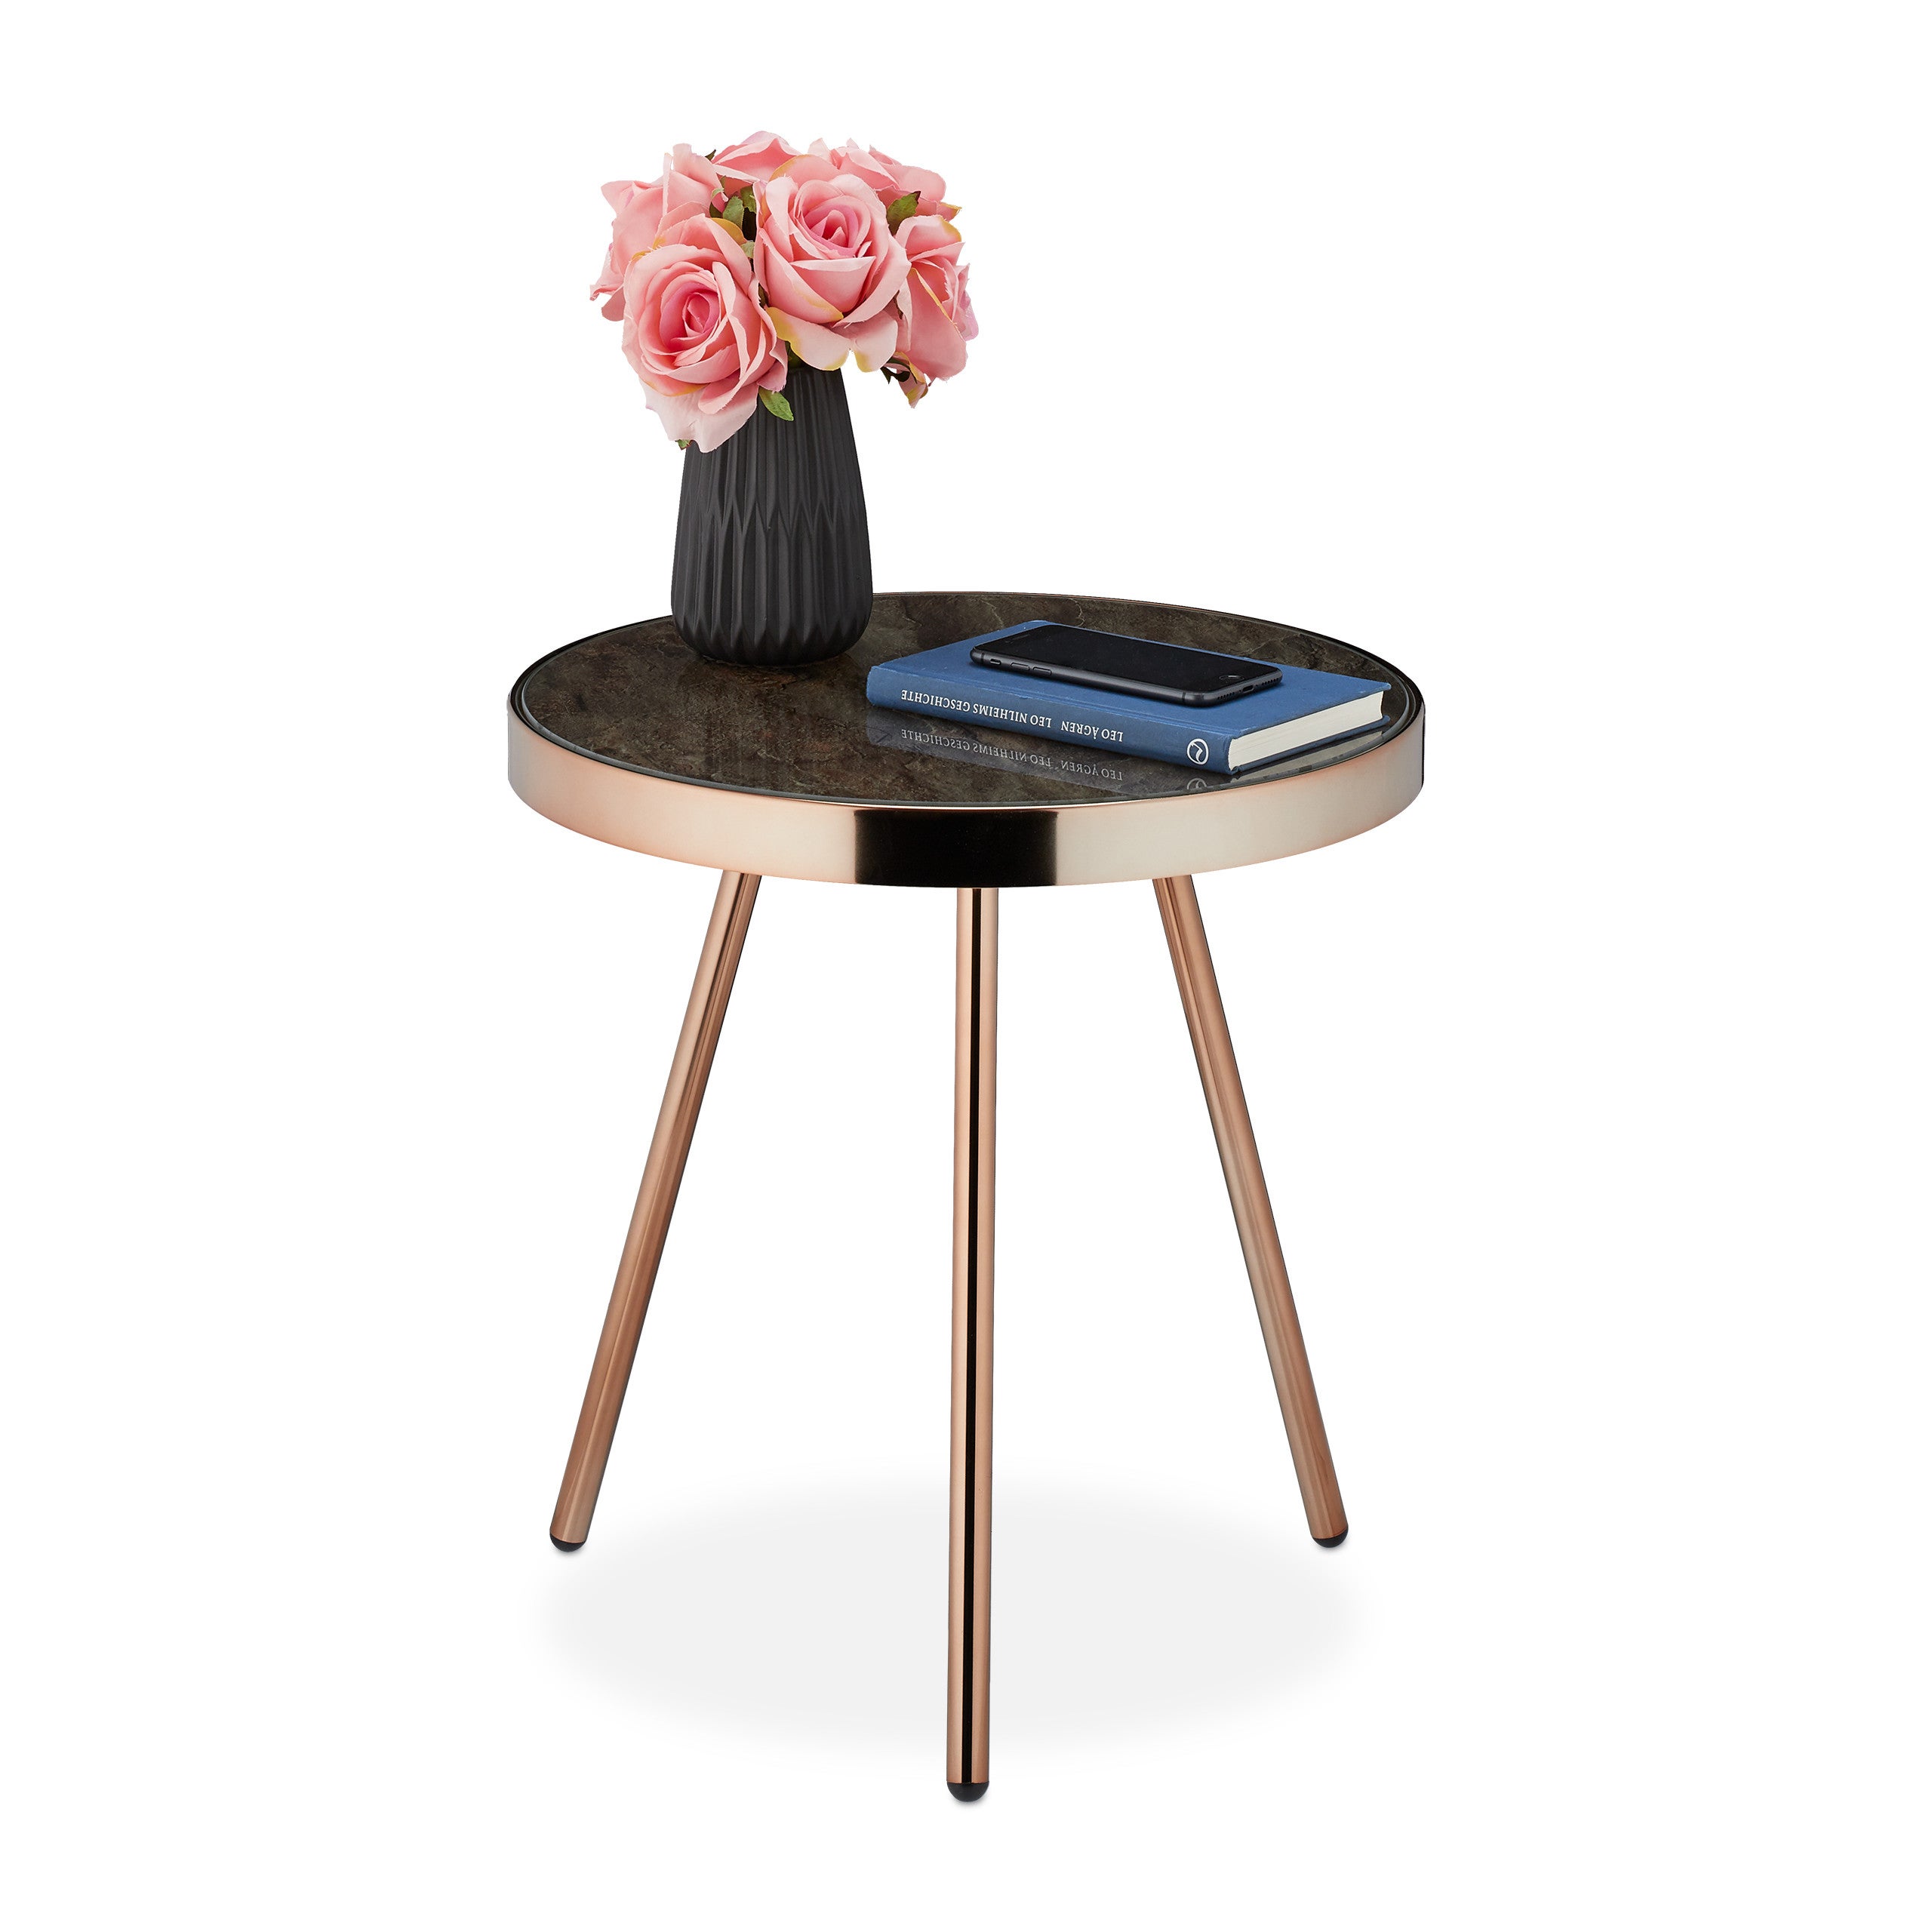 relaxdays Bambù per Riporre Oggetti in Sala,49x40 cm 49 x 40 x 40 cm nero Tavolino da Salotto con Rotelle Rotondo Design Moderno plastica legno 